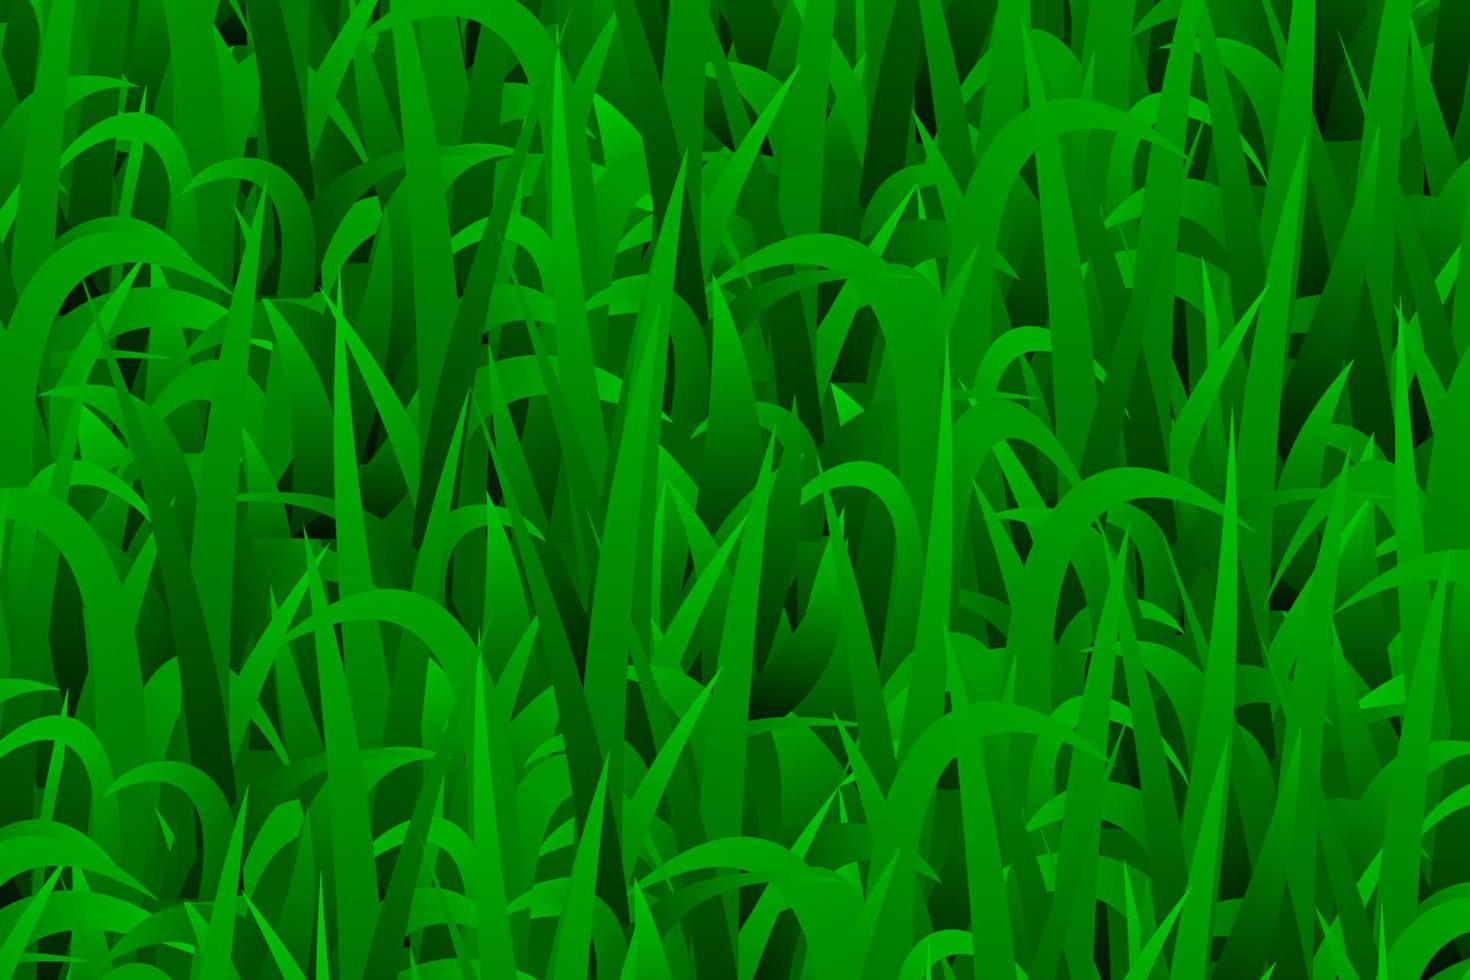 groene bladeren textuur vector